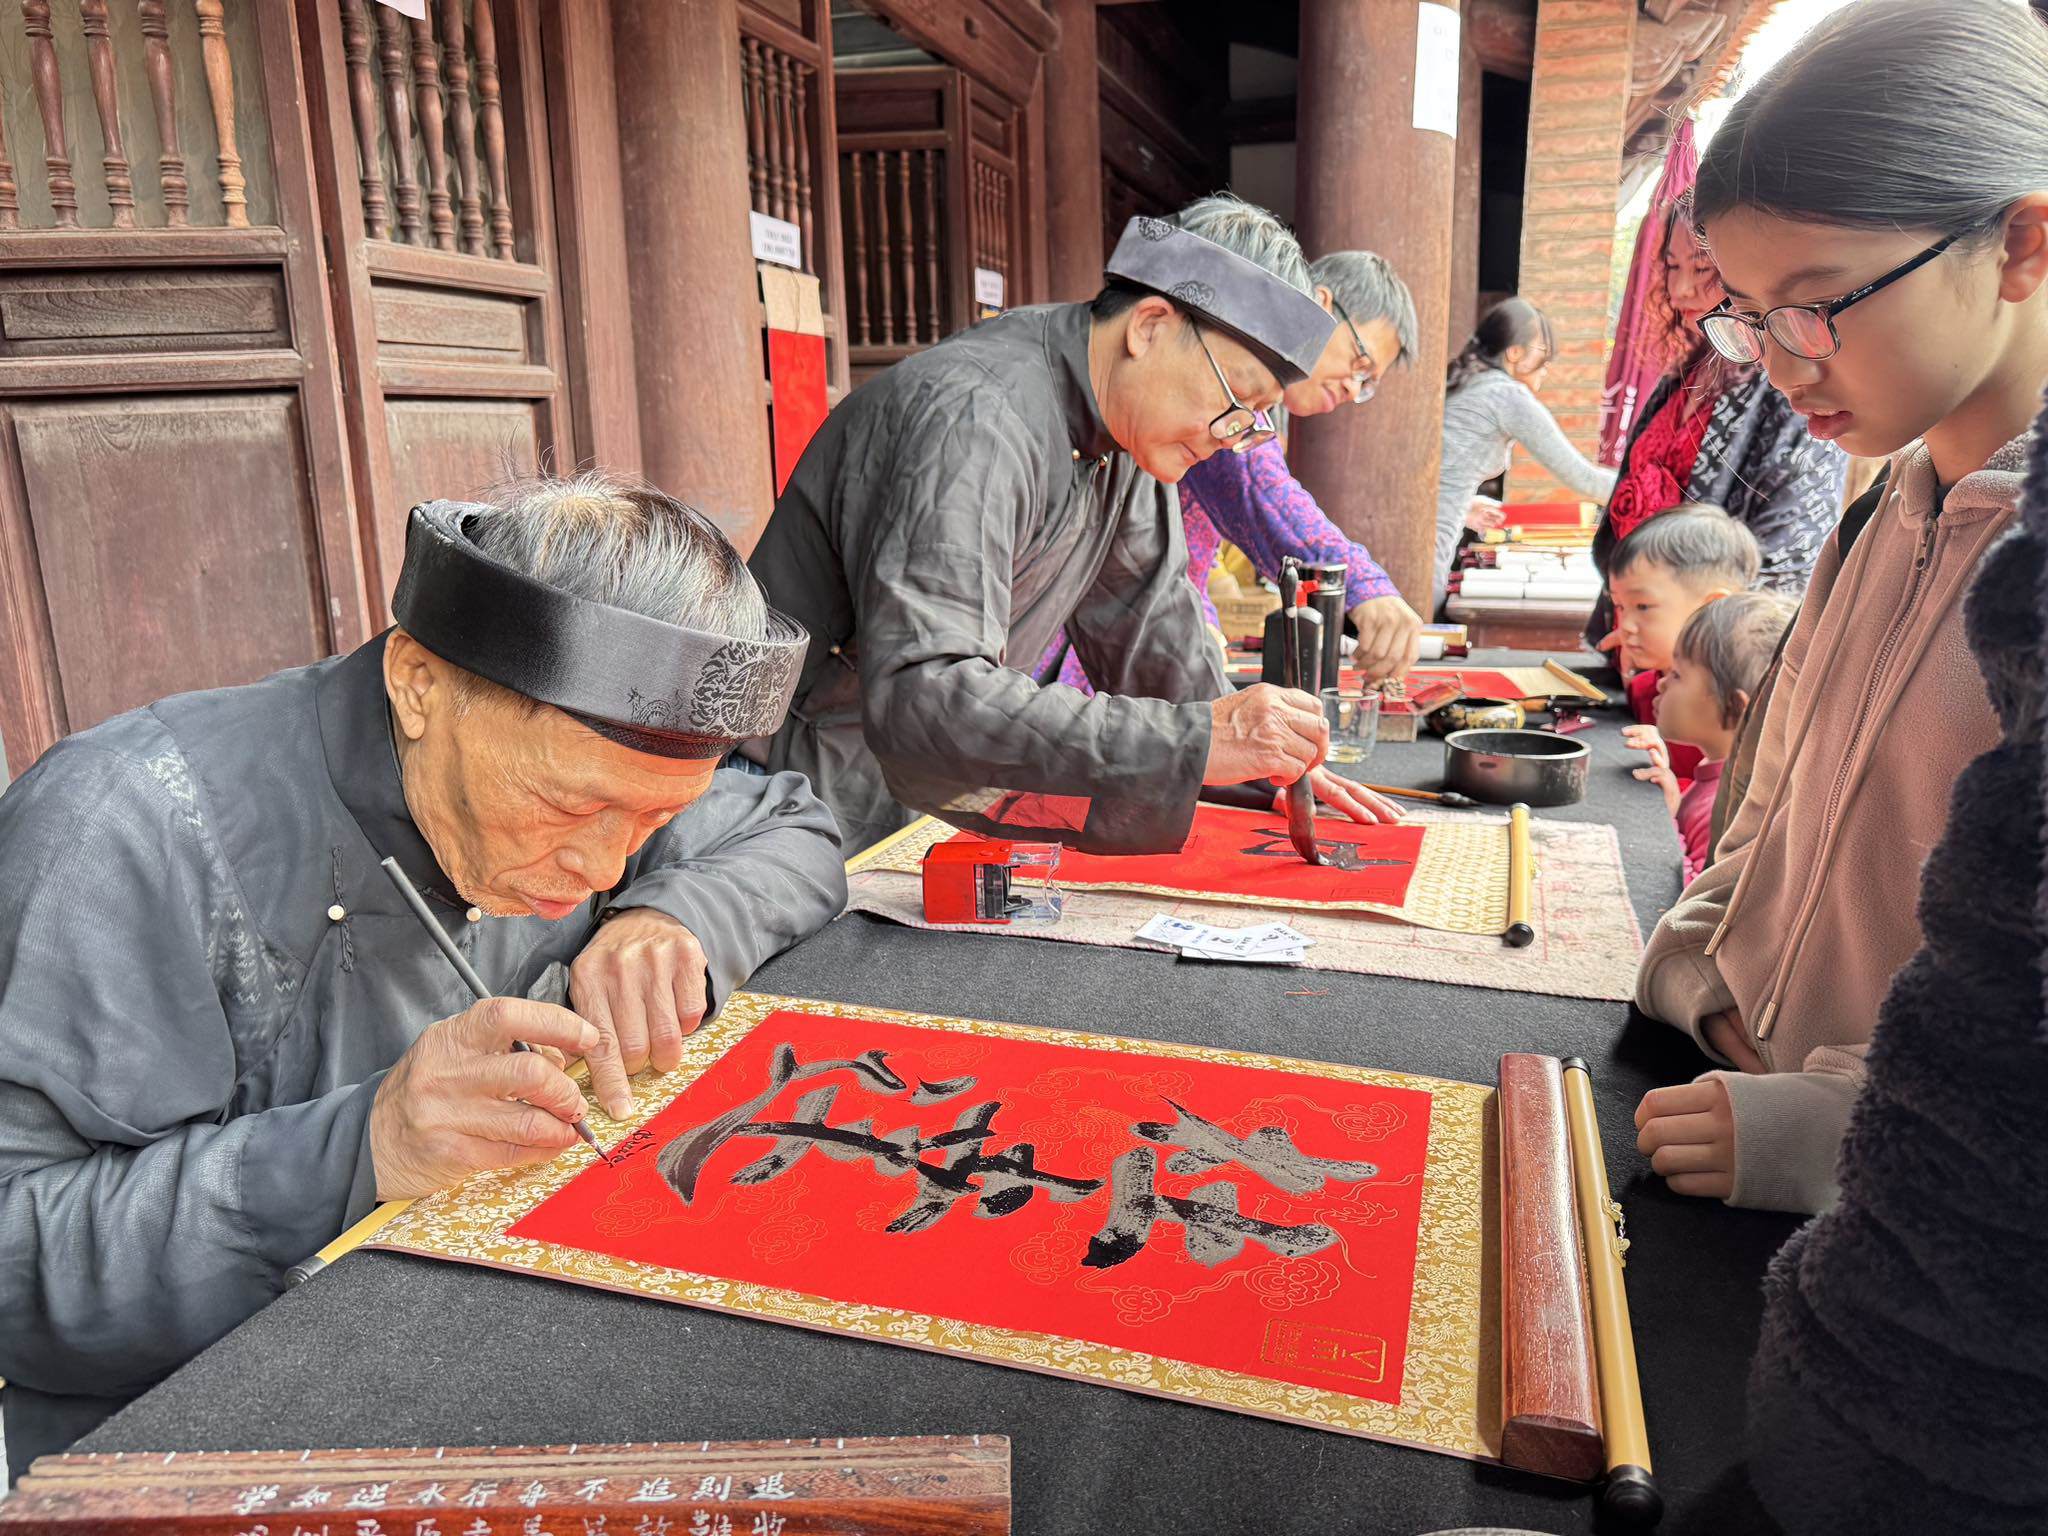 Dân sinh - Người dân xếp hàng dài chờ xin chữ đầu năm ở Văn Miếu (Hình 11).